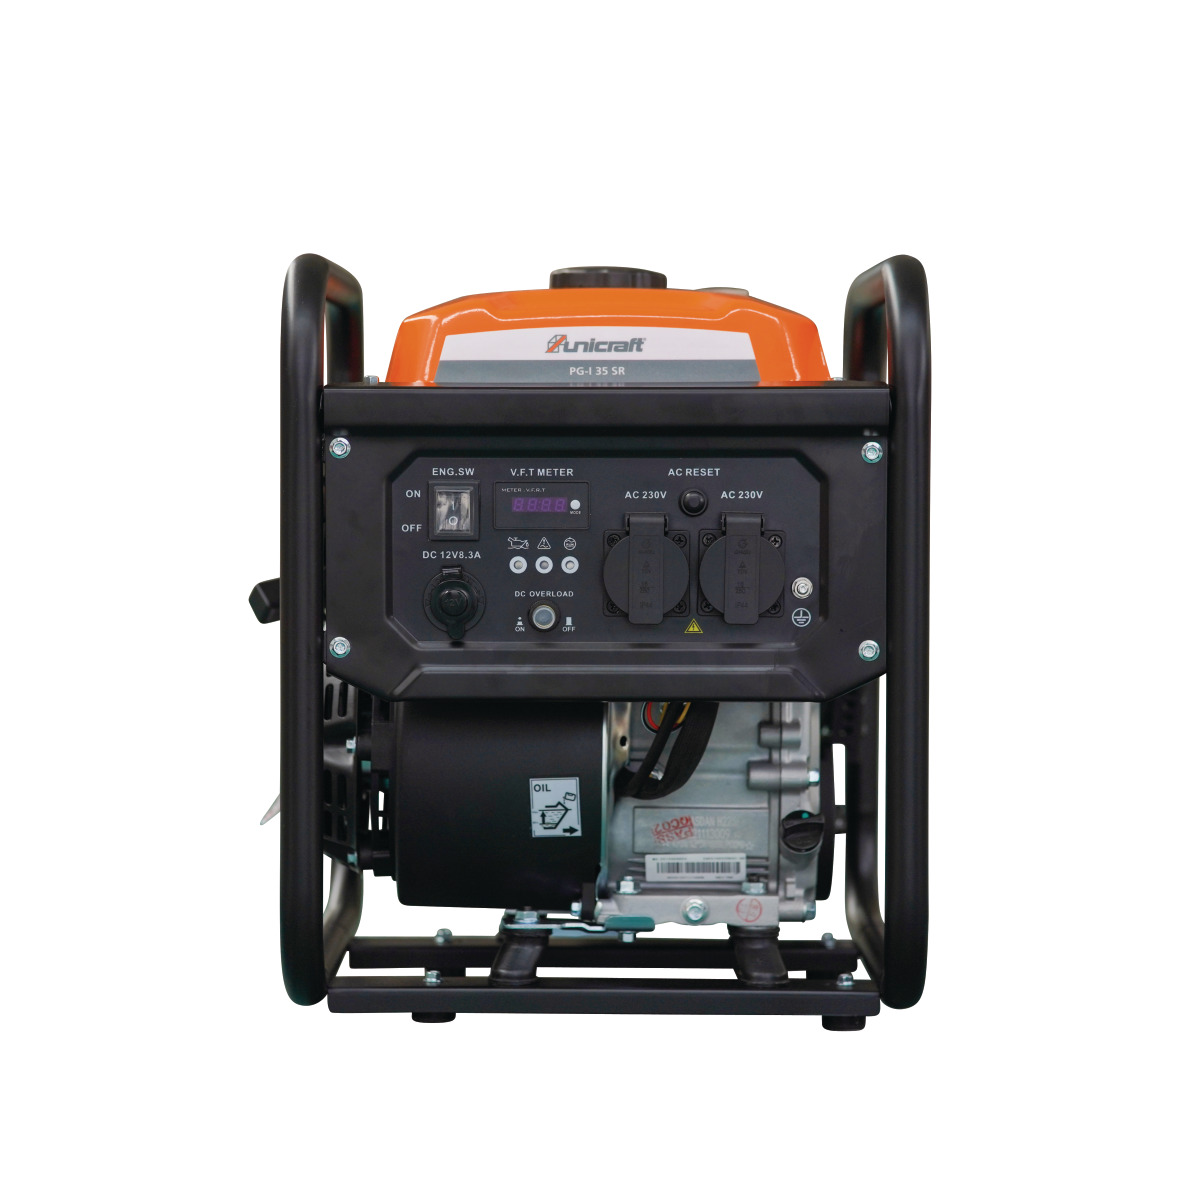  Unicraft Inverter-Stromerzeuger PG-I 35 SR 